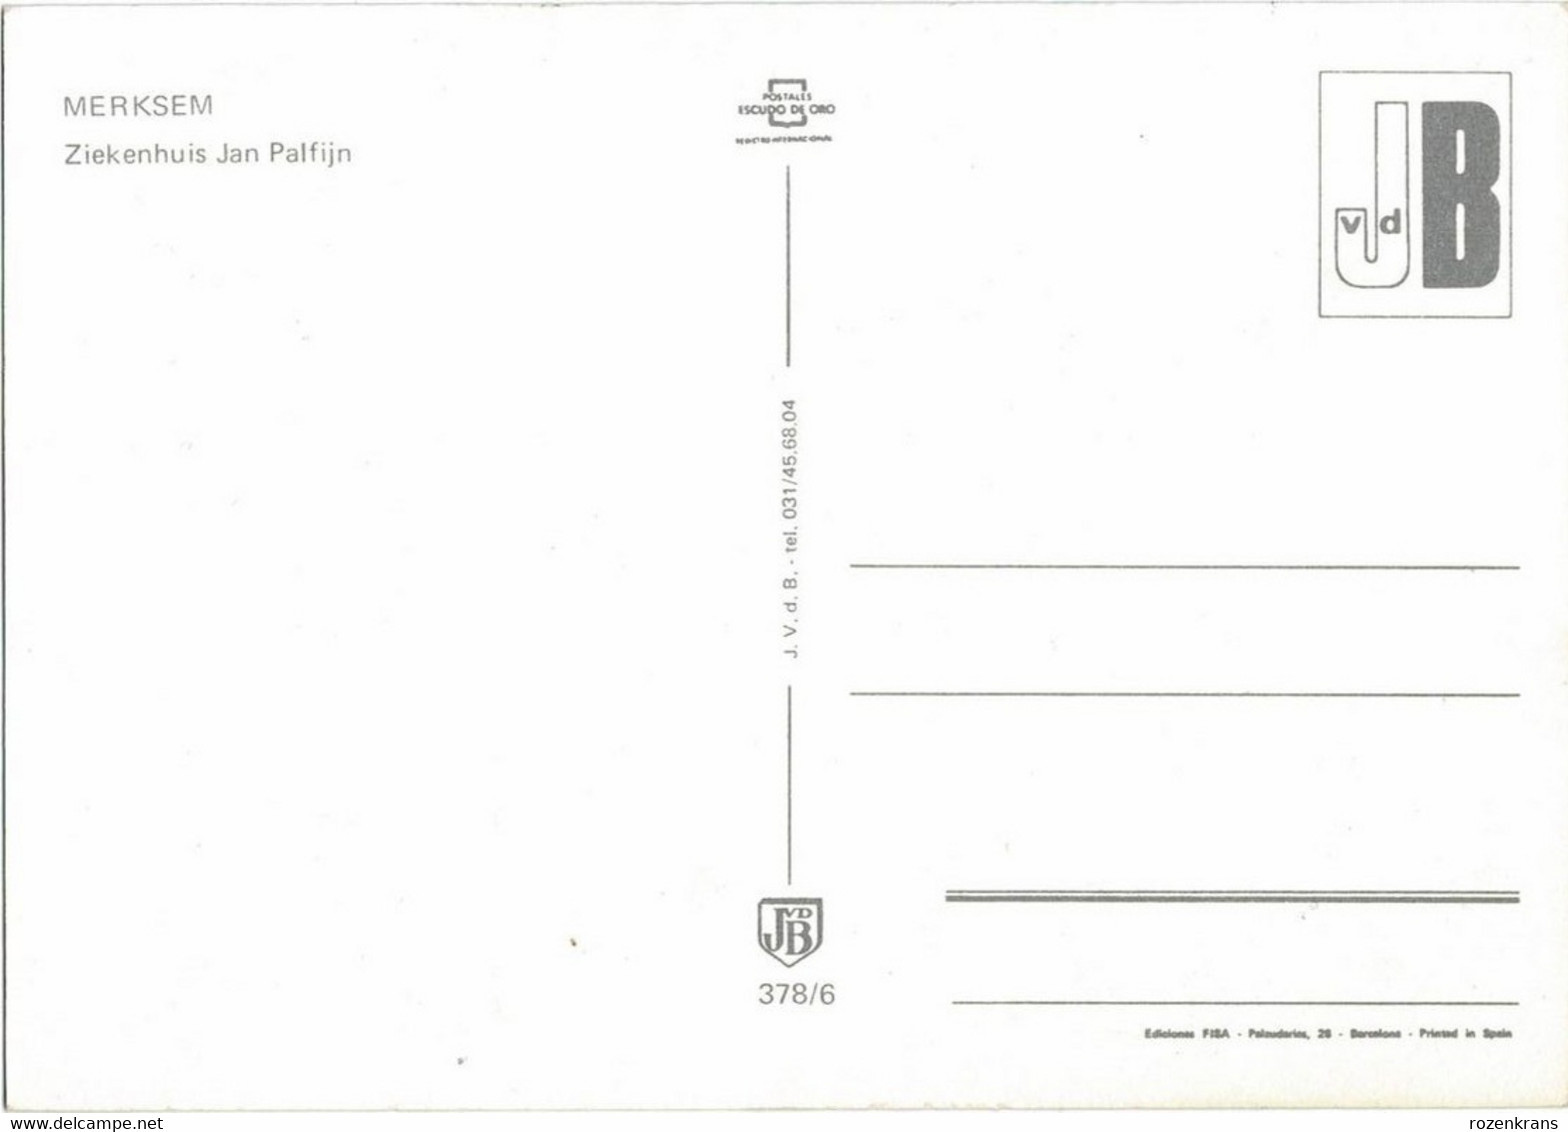 Lot Lotje van 6 Postkaarten Groot Formaat JvdB Grote kaart Groeten uit merksem Antwerpen (In zeer goede staat) CPA